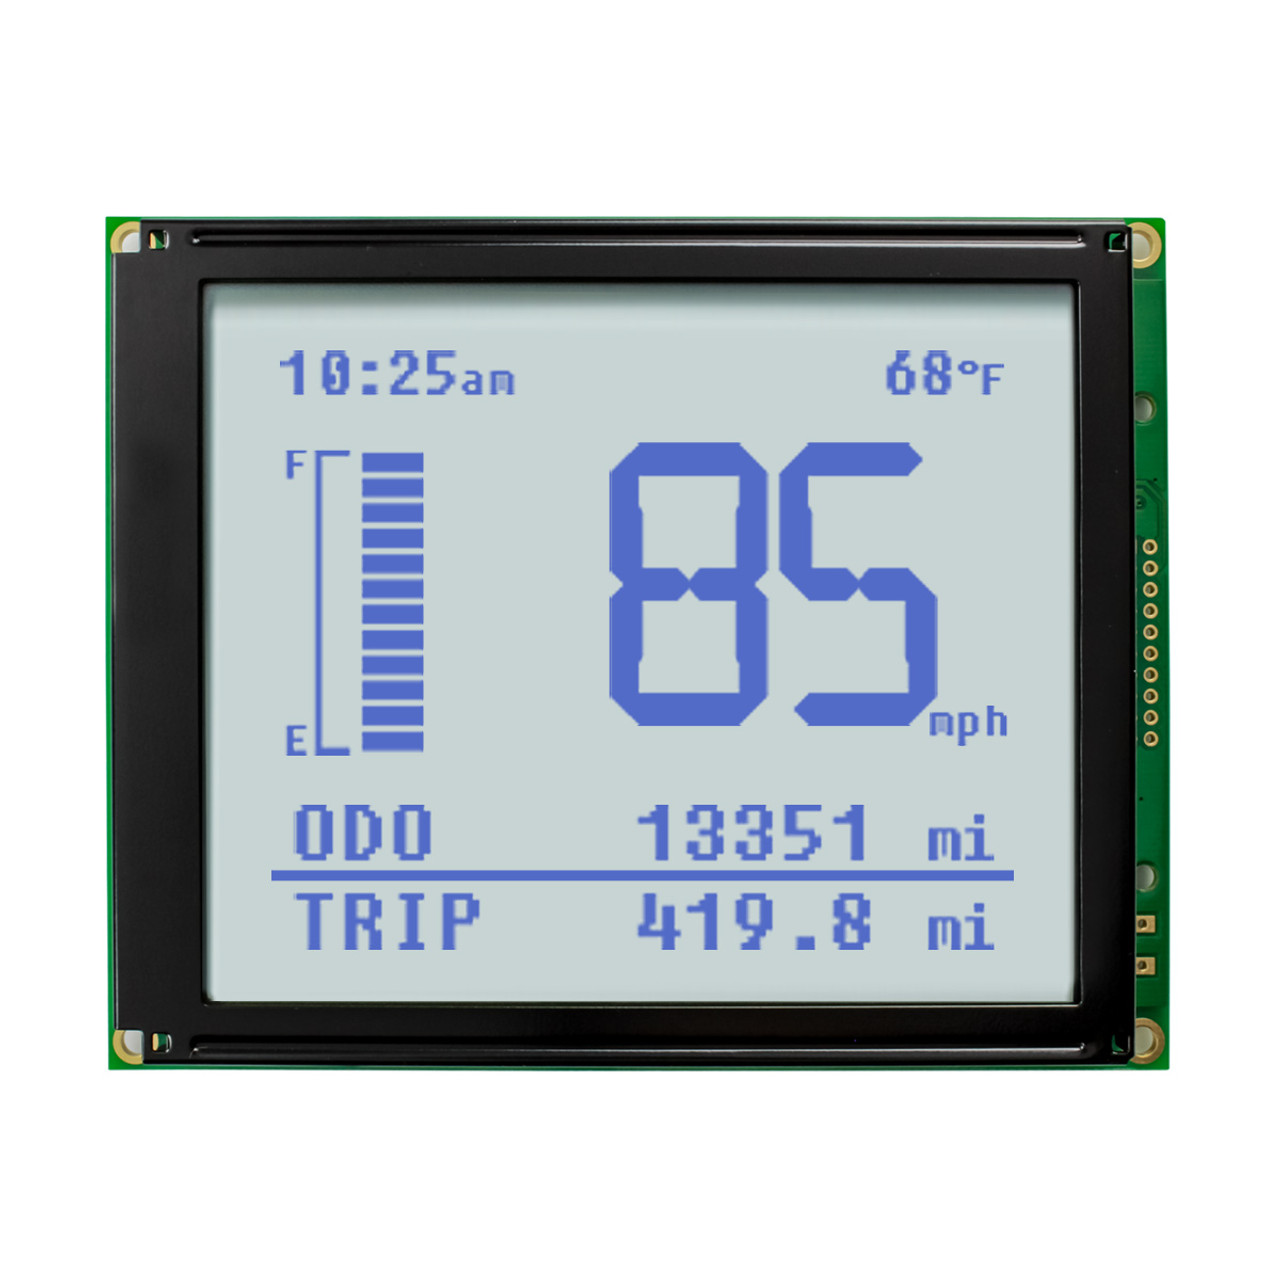 Testeur avec écran LCD - Tous les fabricants industriels